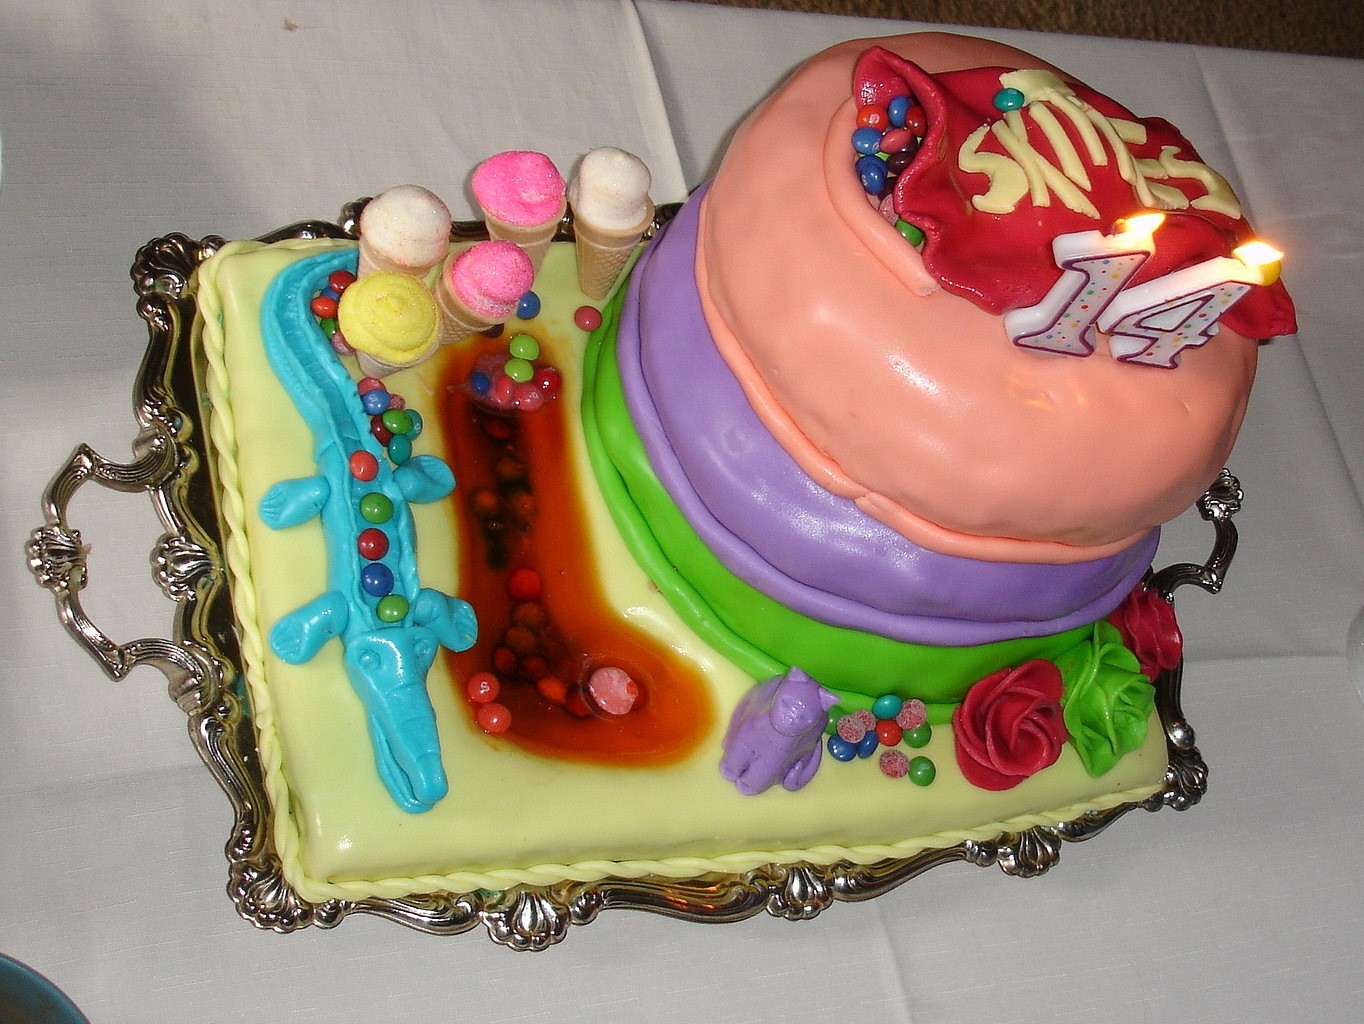 Skittles Birthday torta